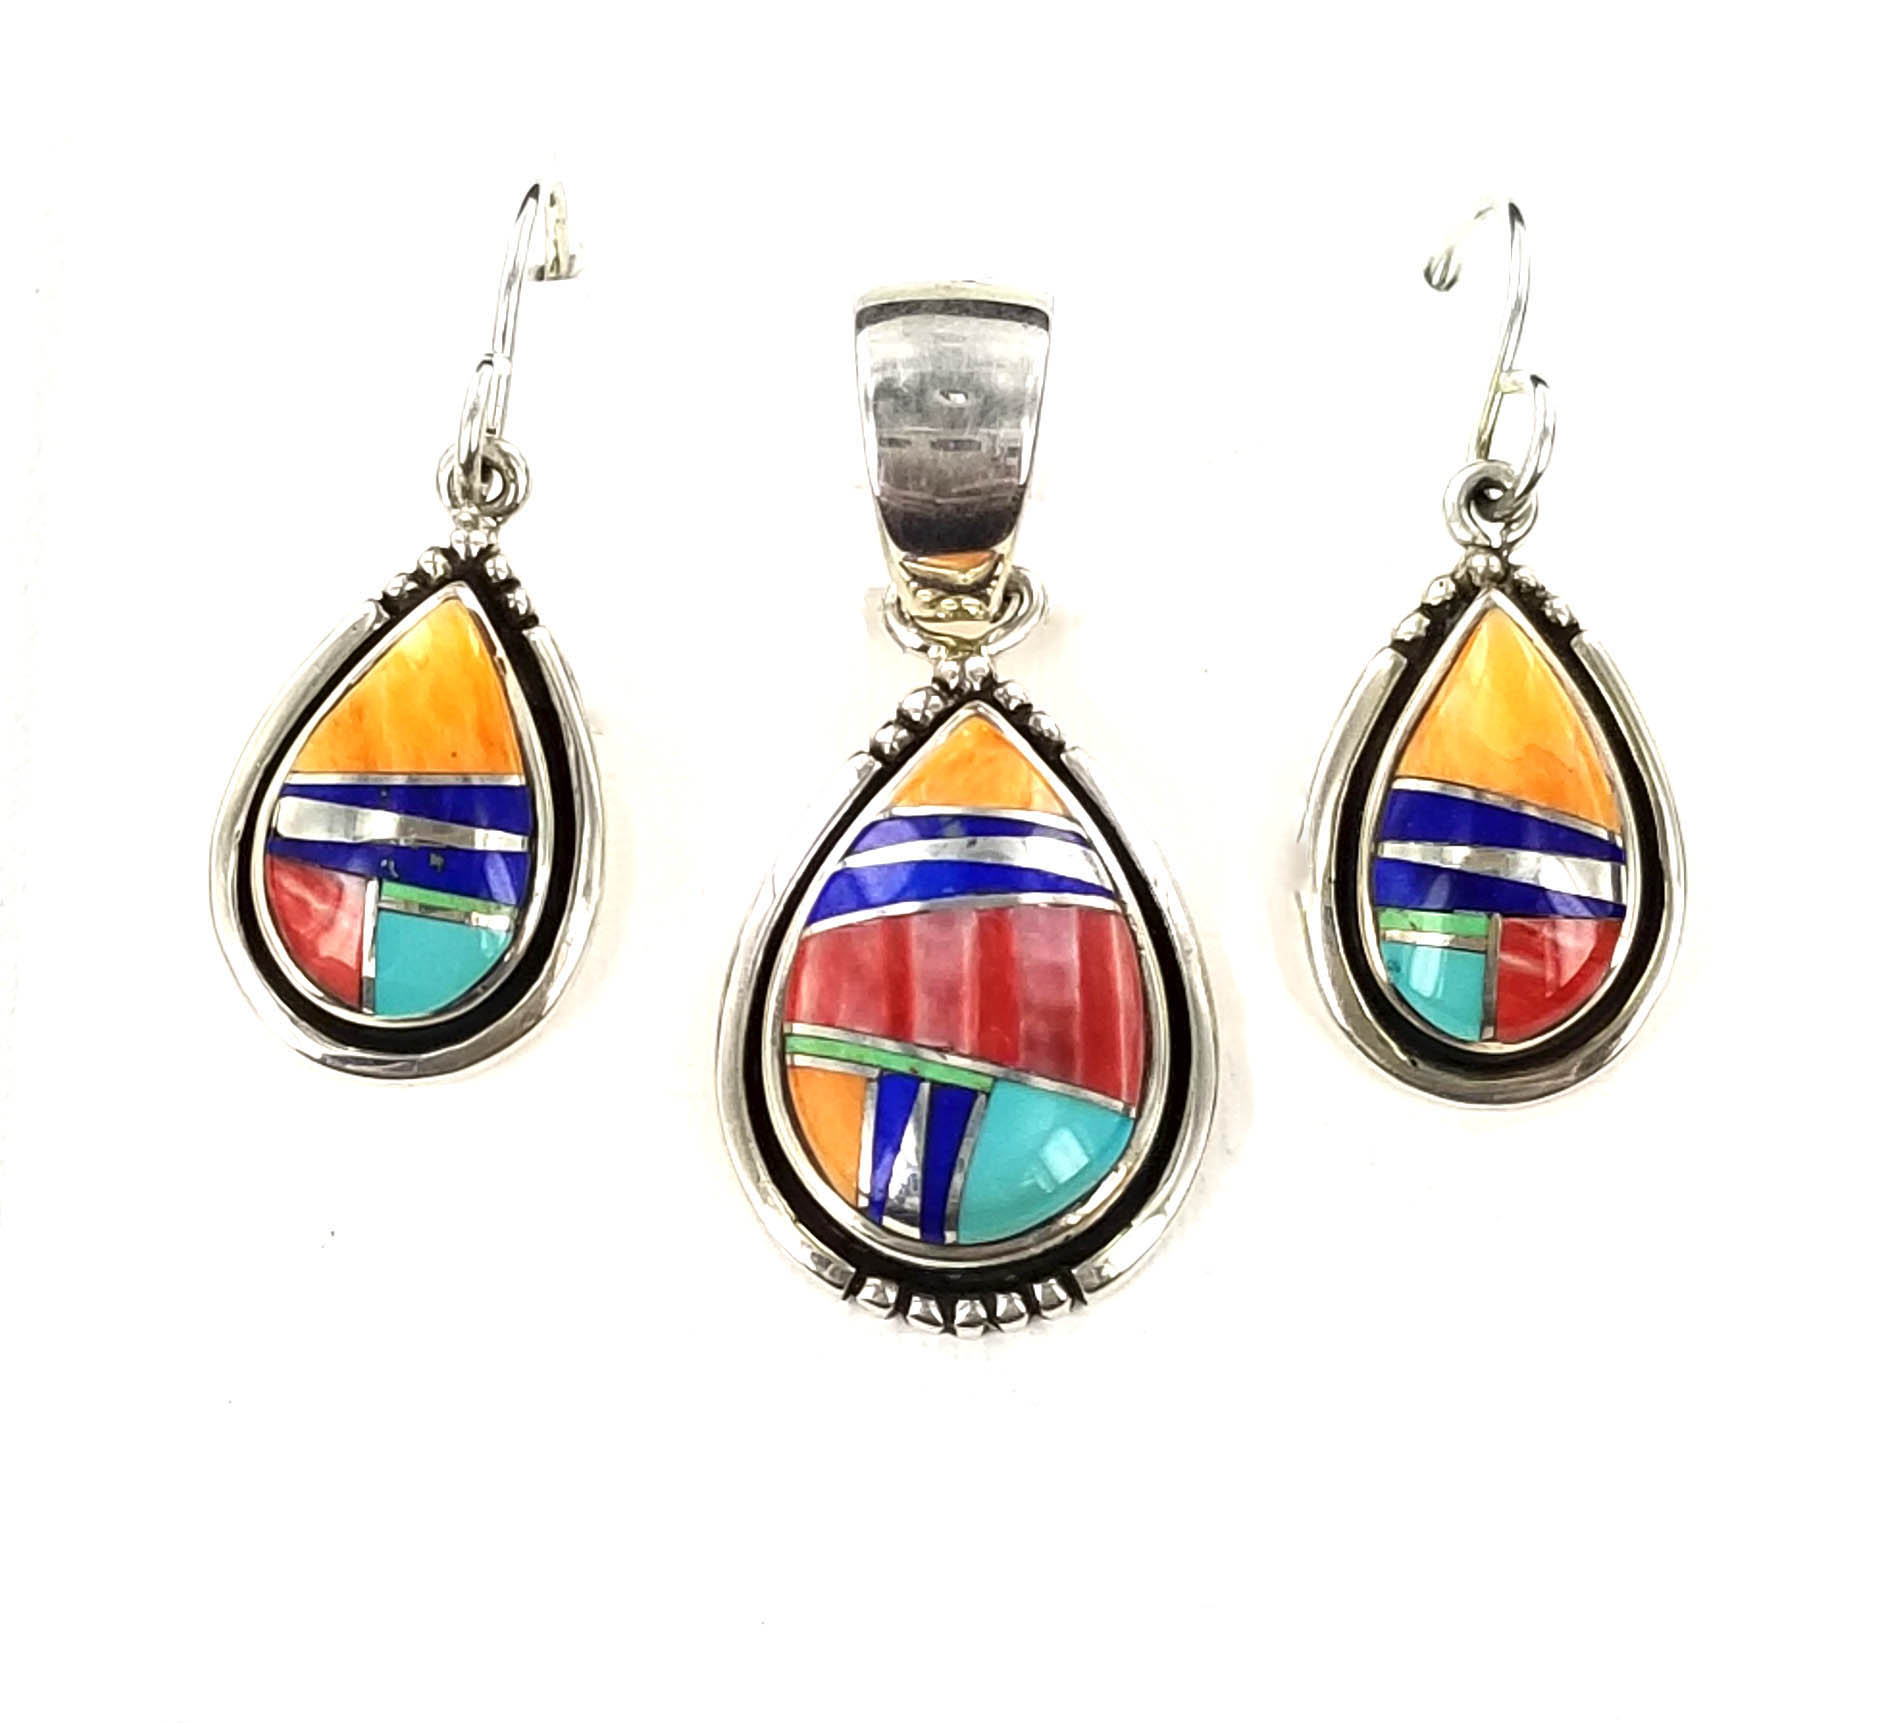 1 Cascajo stone nugget necklace bracelet earrings set Peruvian choose color 